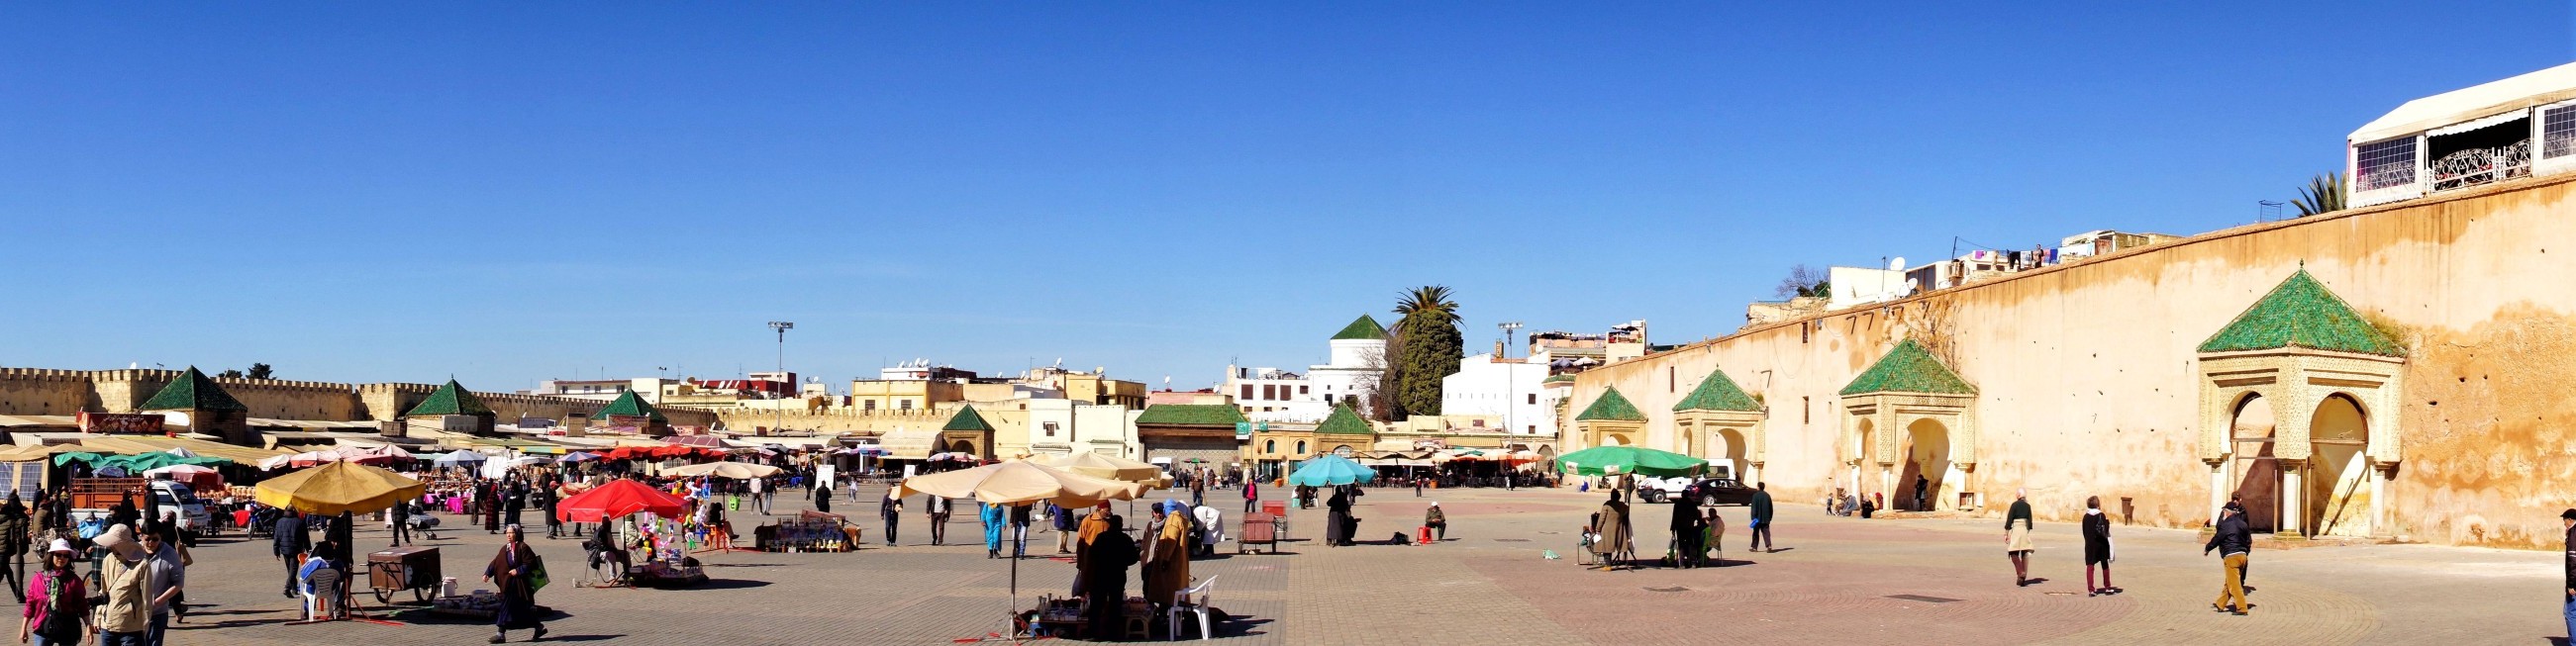 Plac al-Hadim w panoramie Meknes